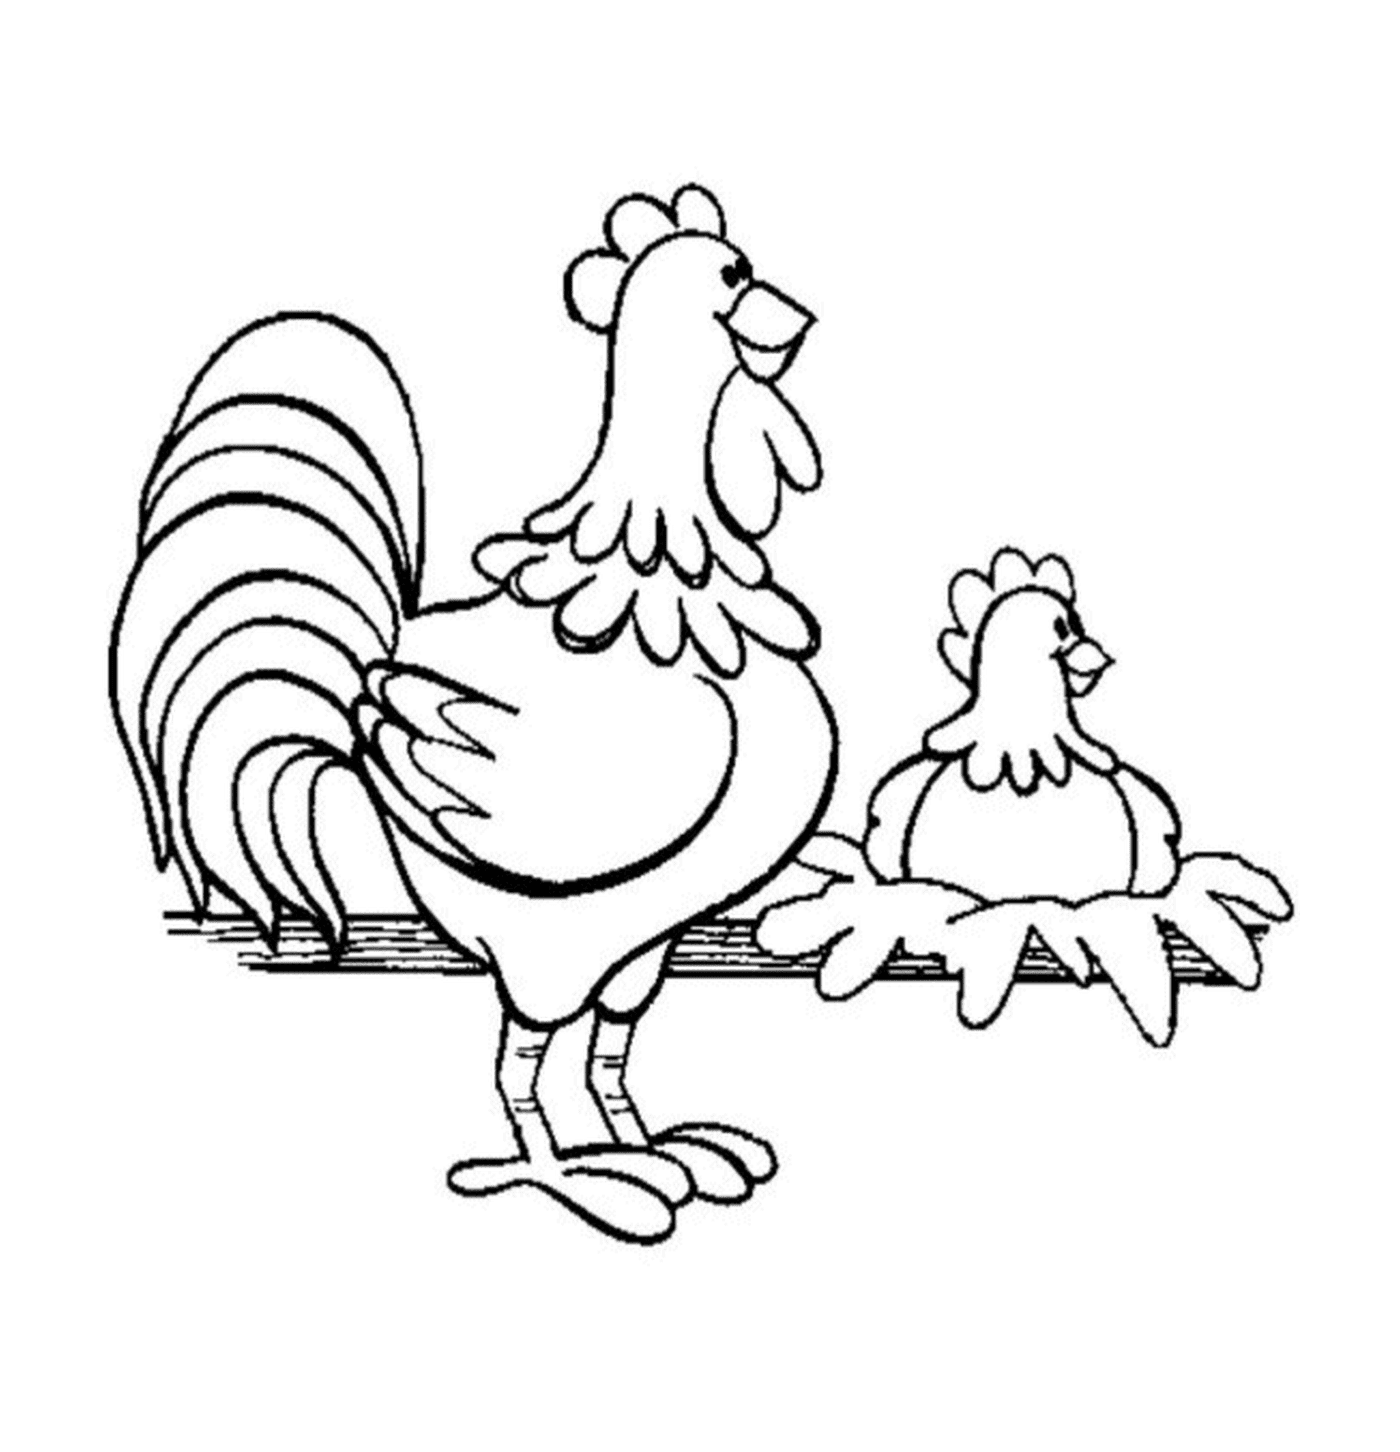  Zwei Hühner thront Zaun 